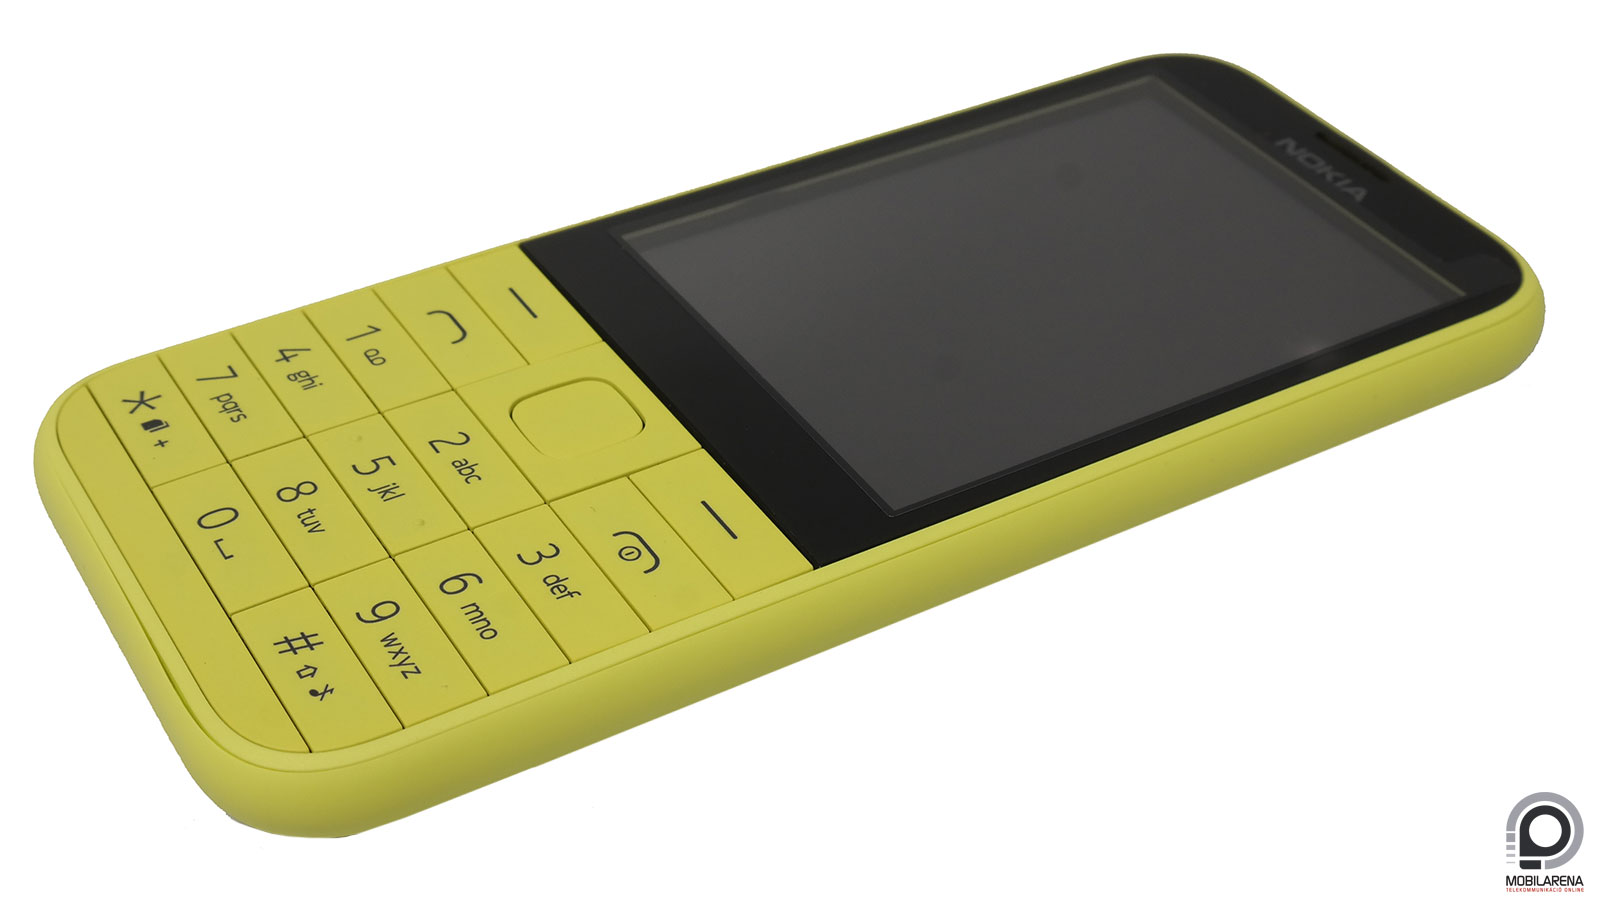 Nokia 225 Dual SIM - hagyományokat követ - Mobilarena Mobiltelefon teszt -  Nyomtatóbarát verzió